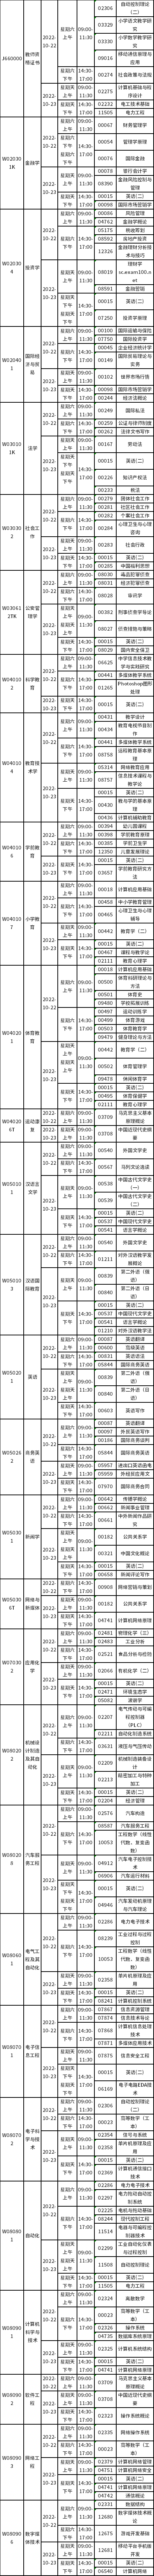 四川省2022年10月自考考试科目安排表